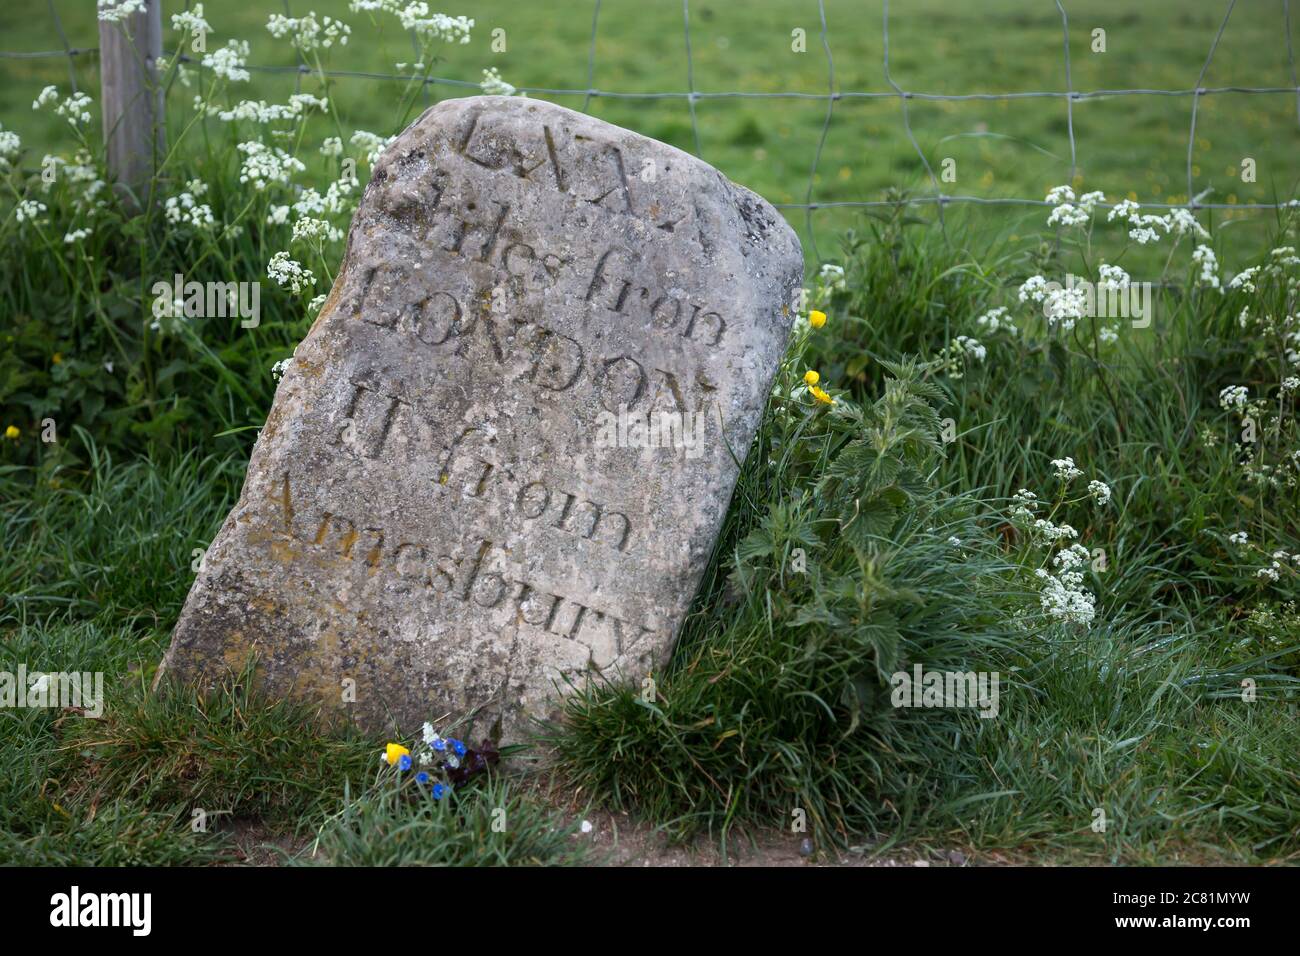 Alter Meilenstein in Stonehenge, UK. Zeigt die Distanz nach London und Amesbury in römischen Ziffern Stockfoto